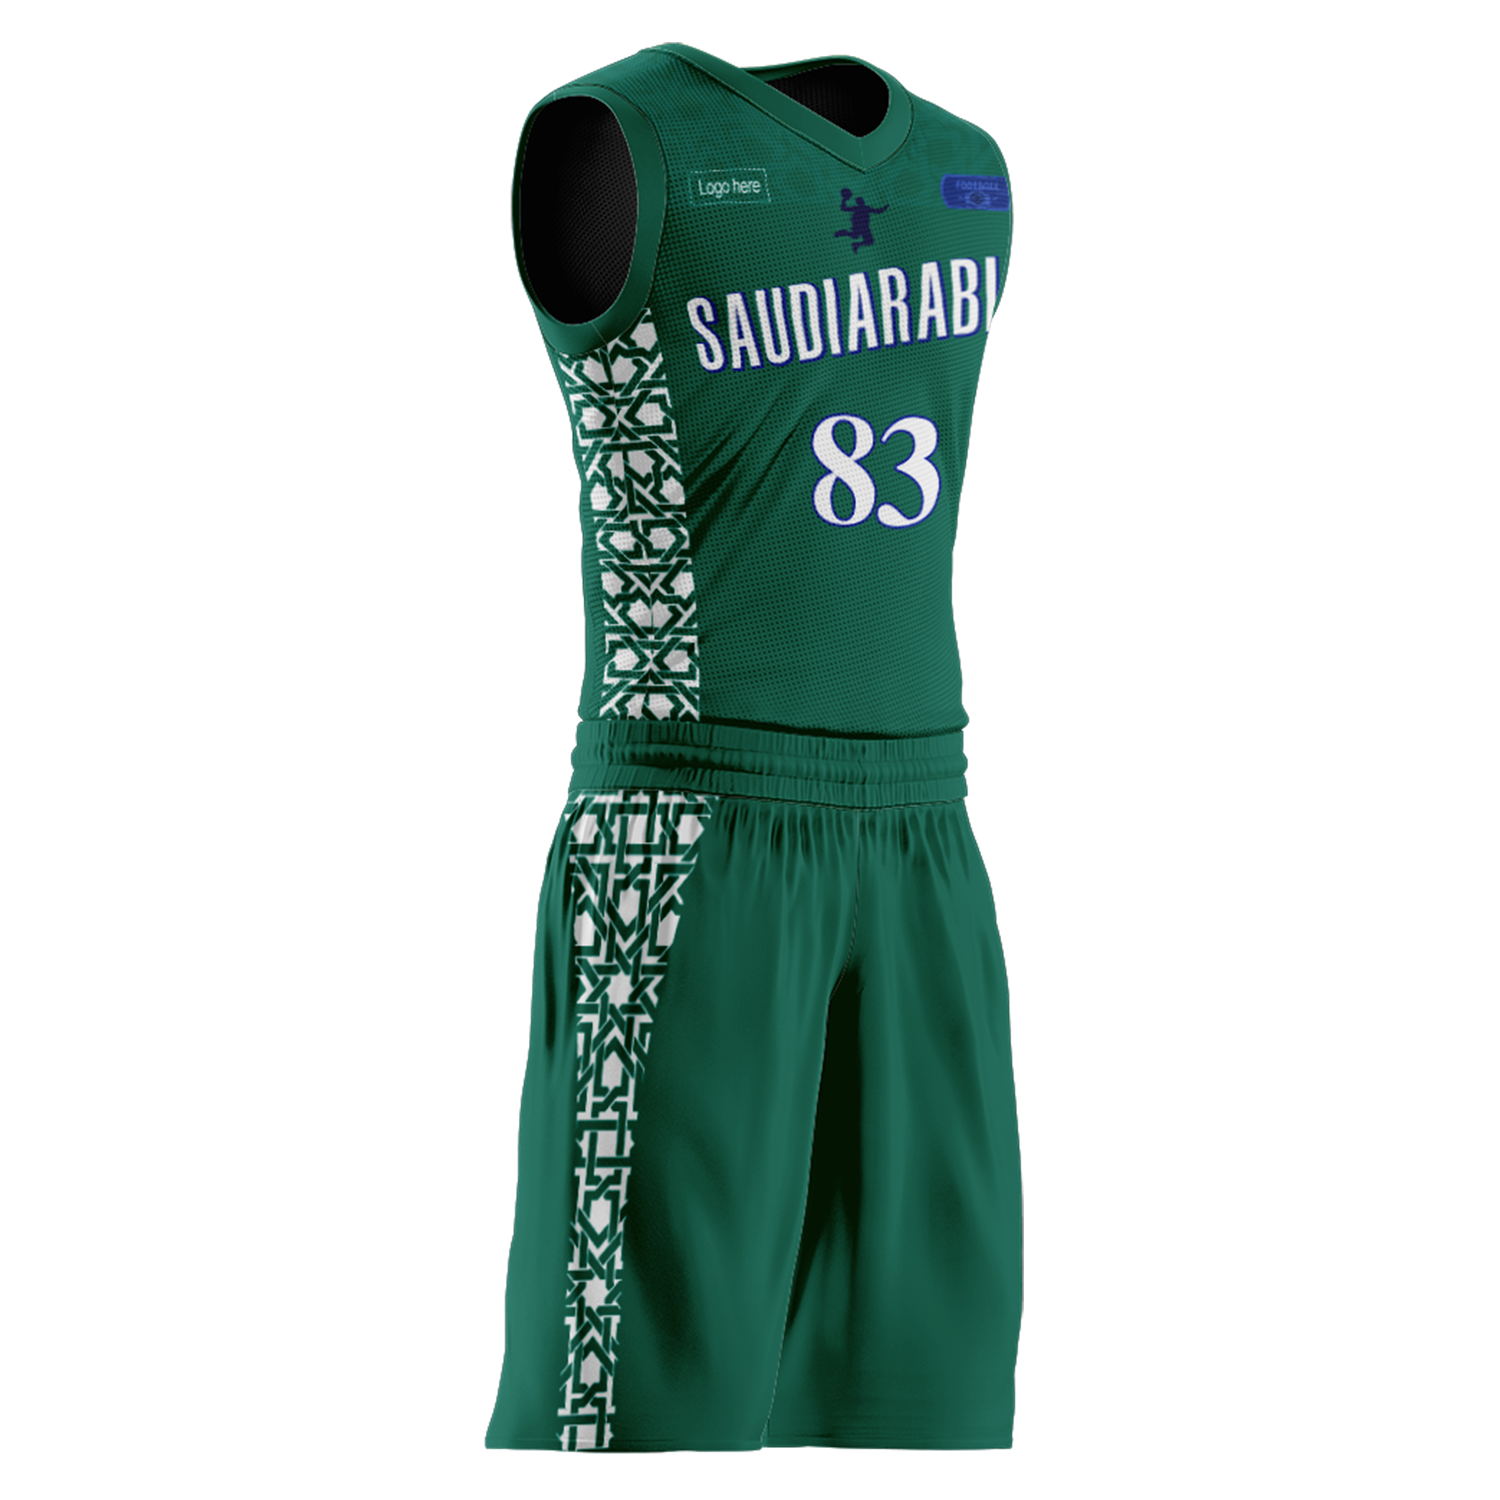 Trajes de baloncesto del equipo de Arabia Saudita personalizados